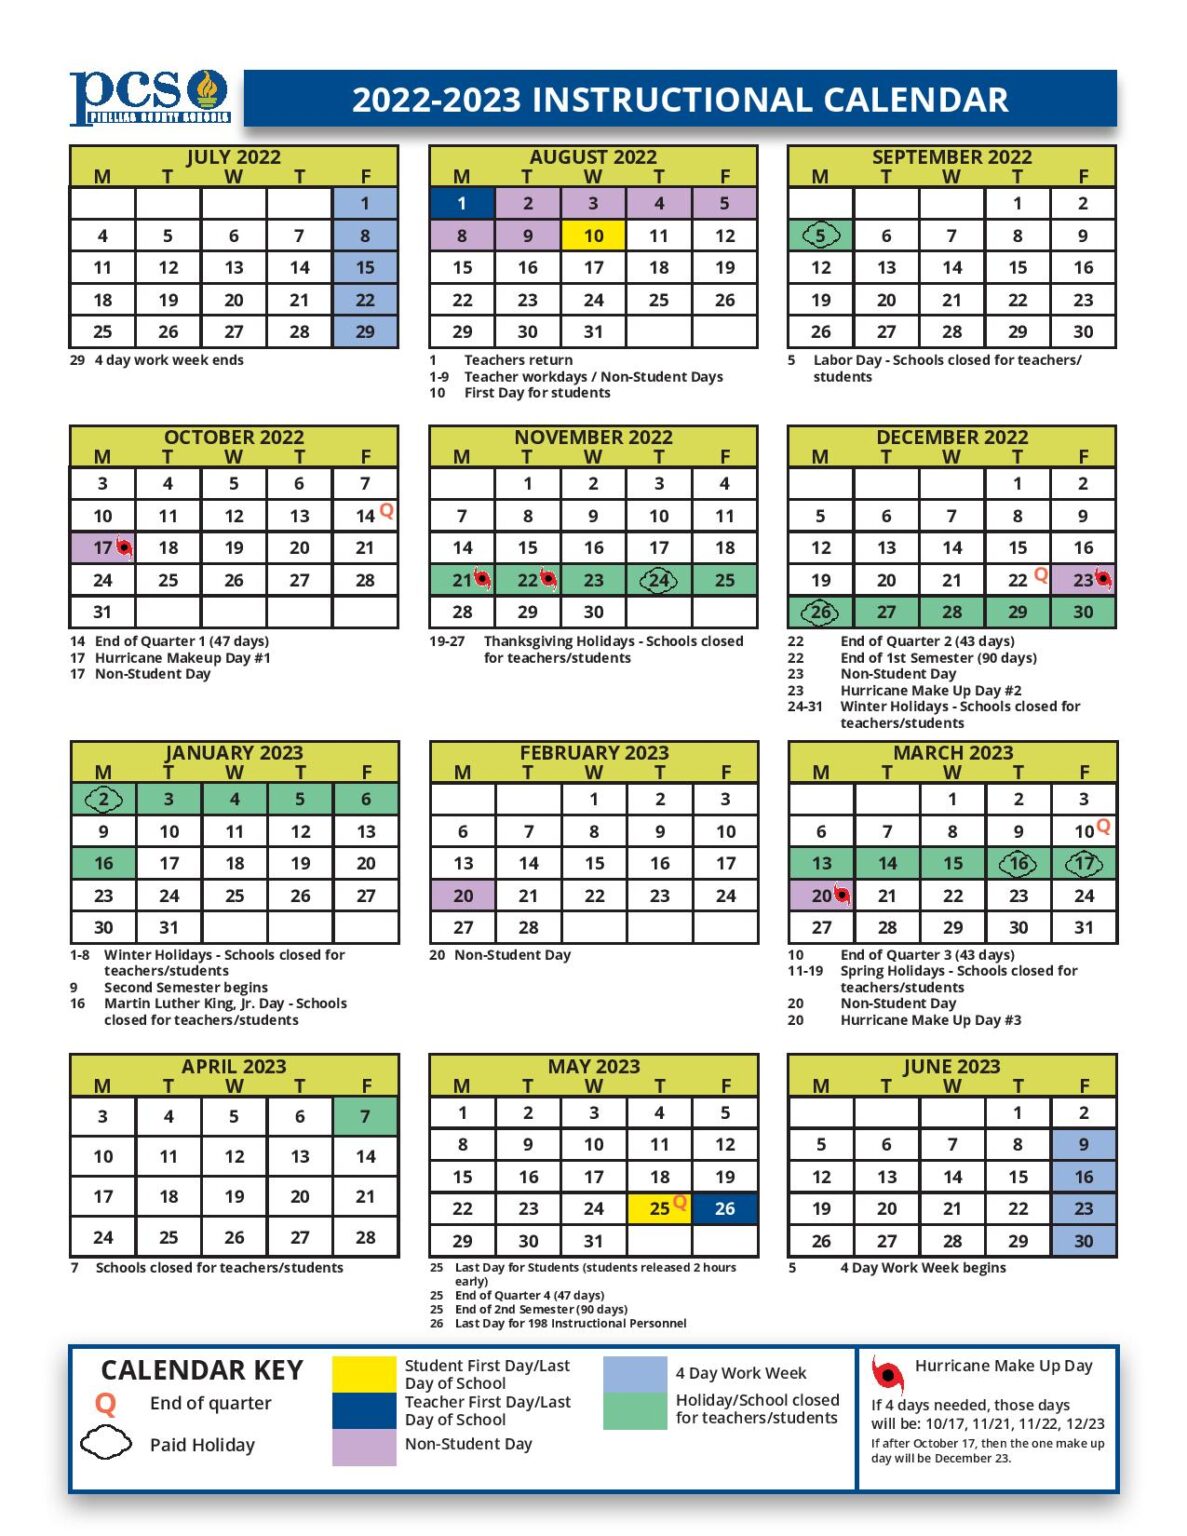 Pinellas County Schools Calendar 20222023 in PDF Format